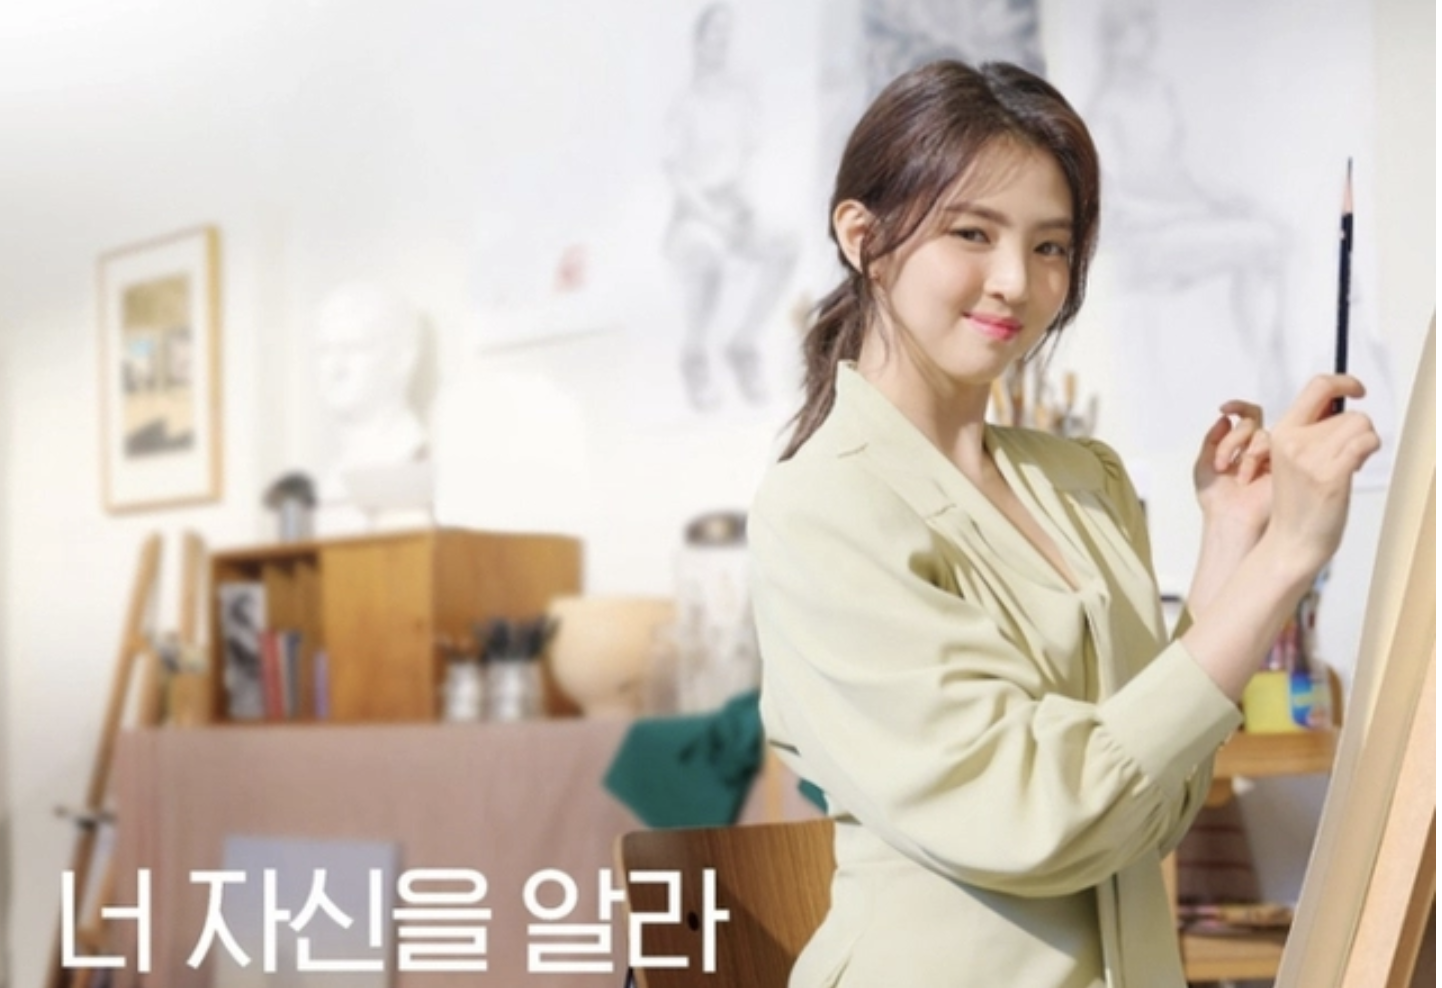 Song Hye Kyo bị réo tên bởi loạt scandal của Han So Hee - ảnh 1